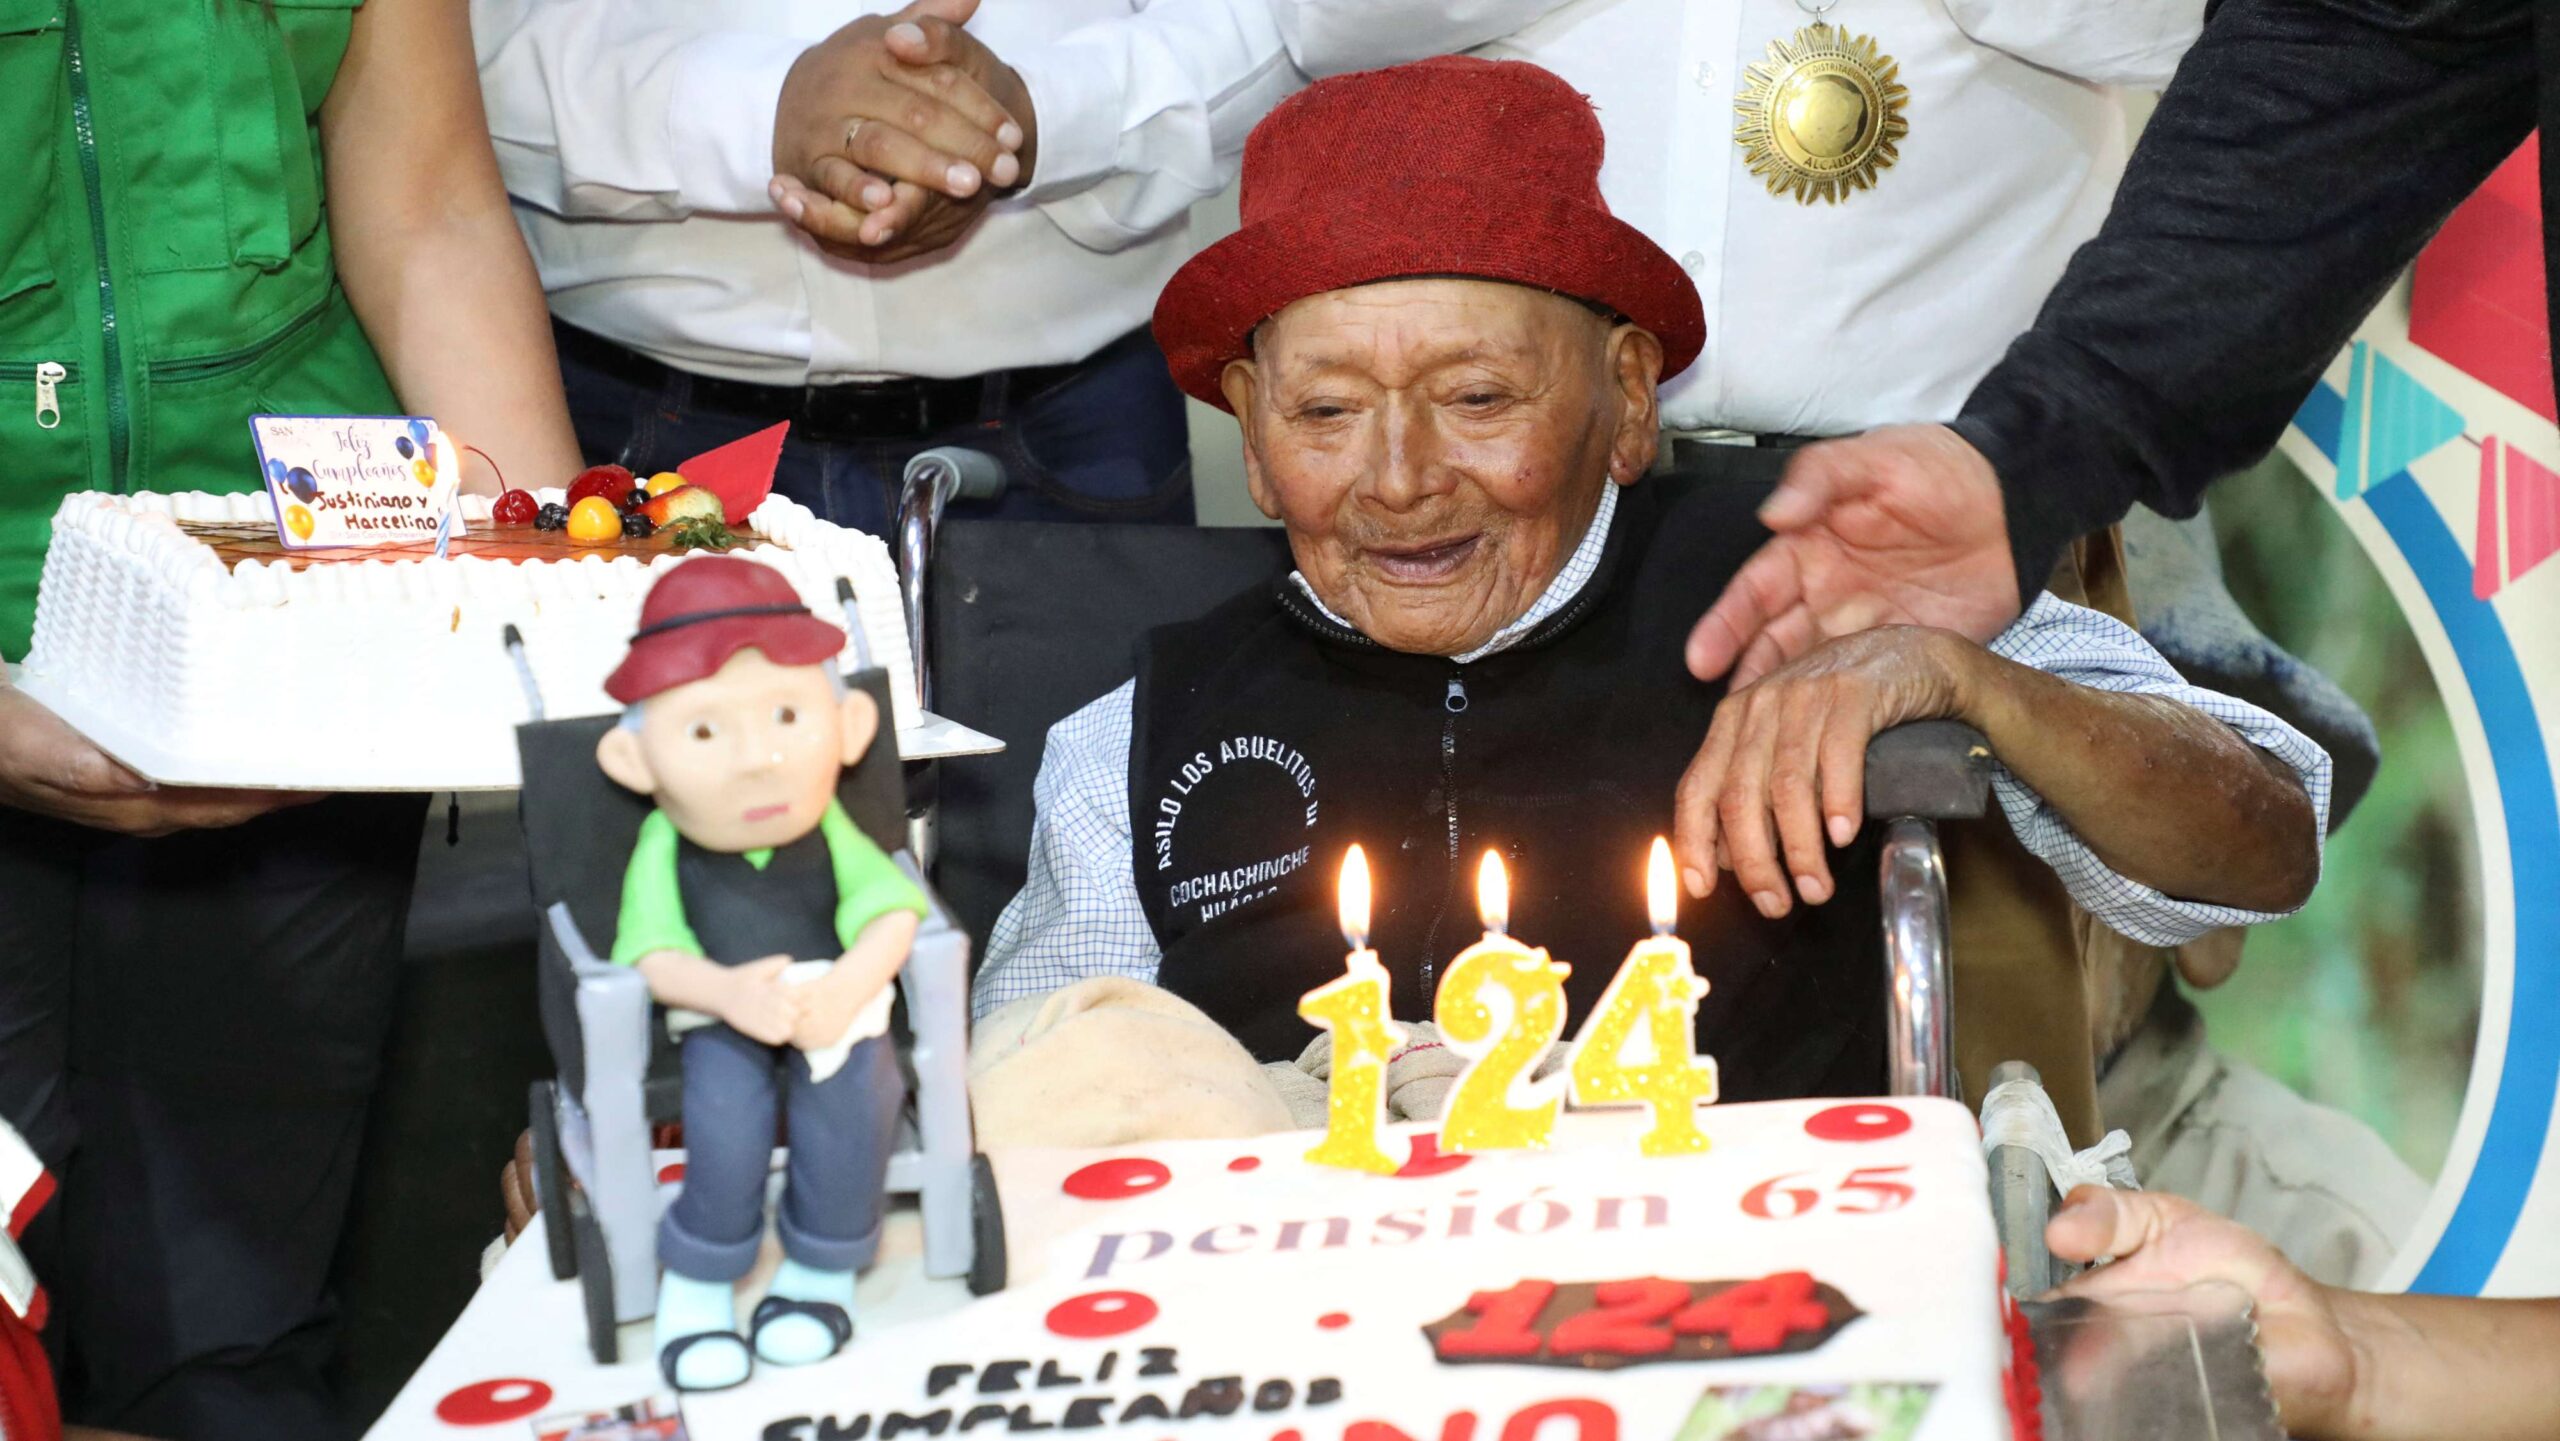 O peruano Marcelino 'Mashico' Abad sorri ao comemorar seu 124º aniversário, enquanto autoridades locais afirmam que ele pode ser a pessoa mais velha do mundo